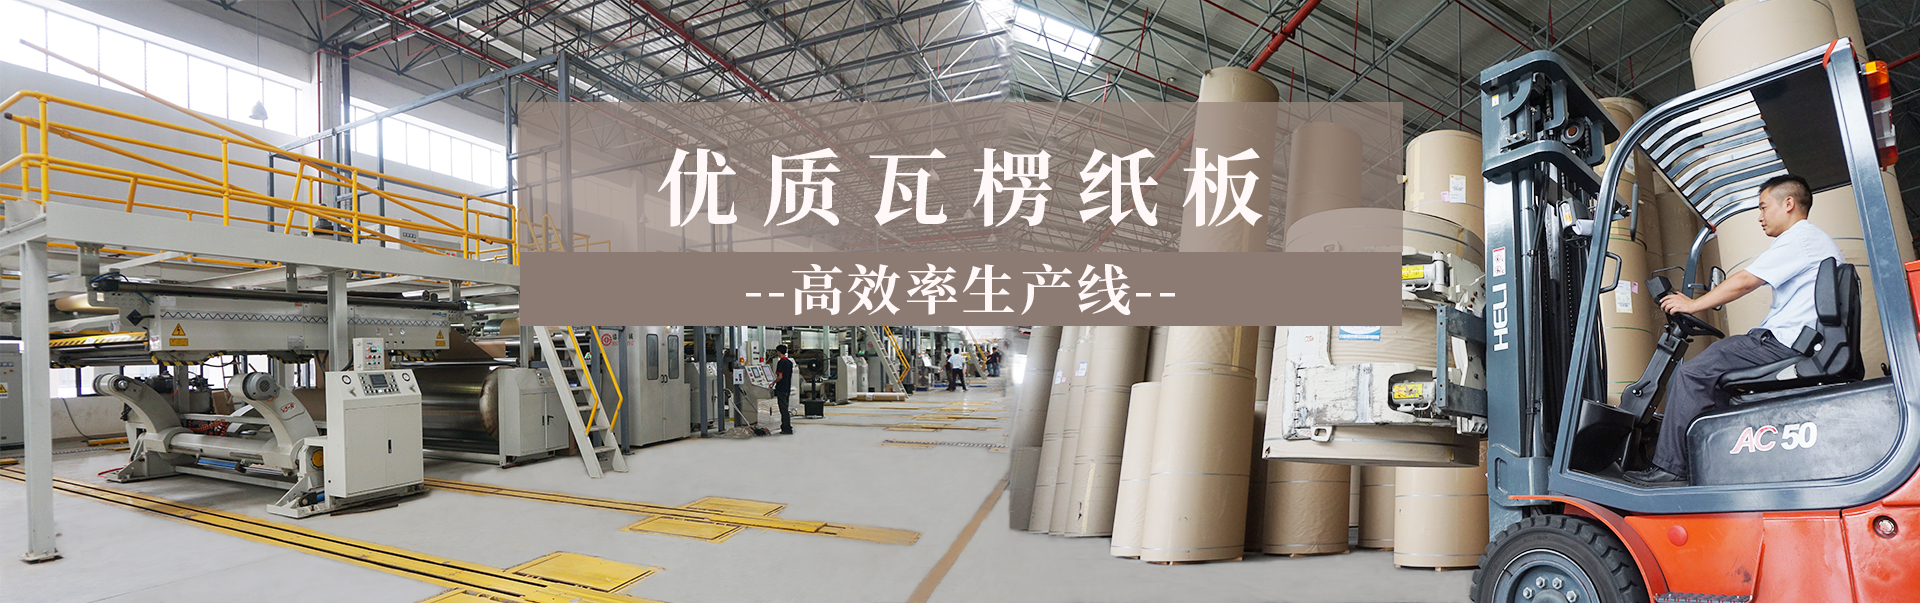 瓦楞纸板批发生产工厂找沐鸣2平台
52年工厂